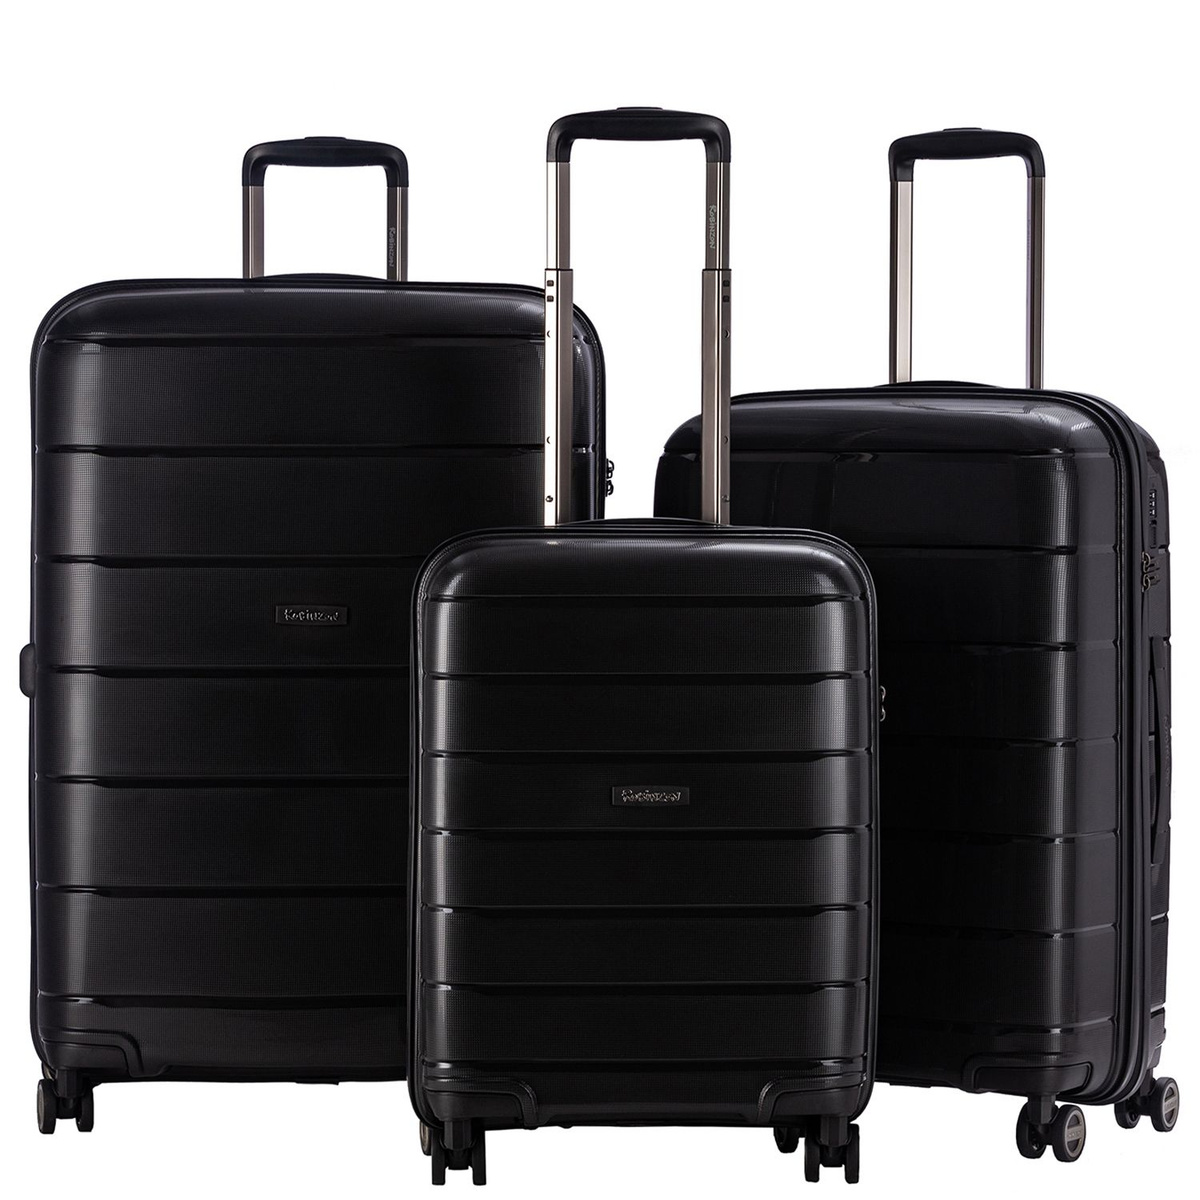 Размер чемодана средний M (56-70 см), что оптимально для путешествий на одну-две недели.